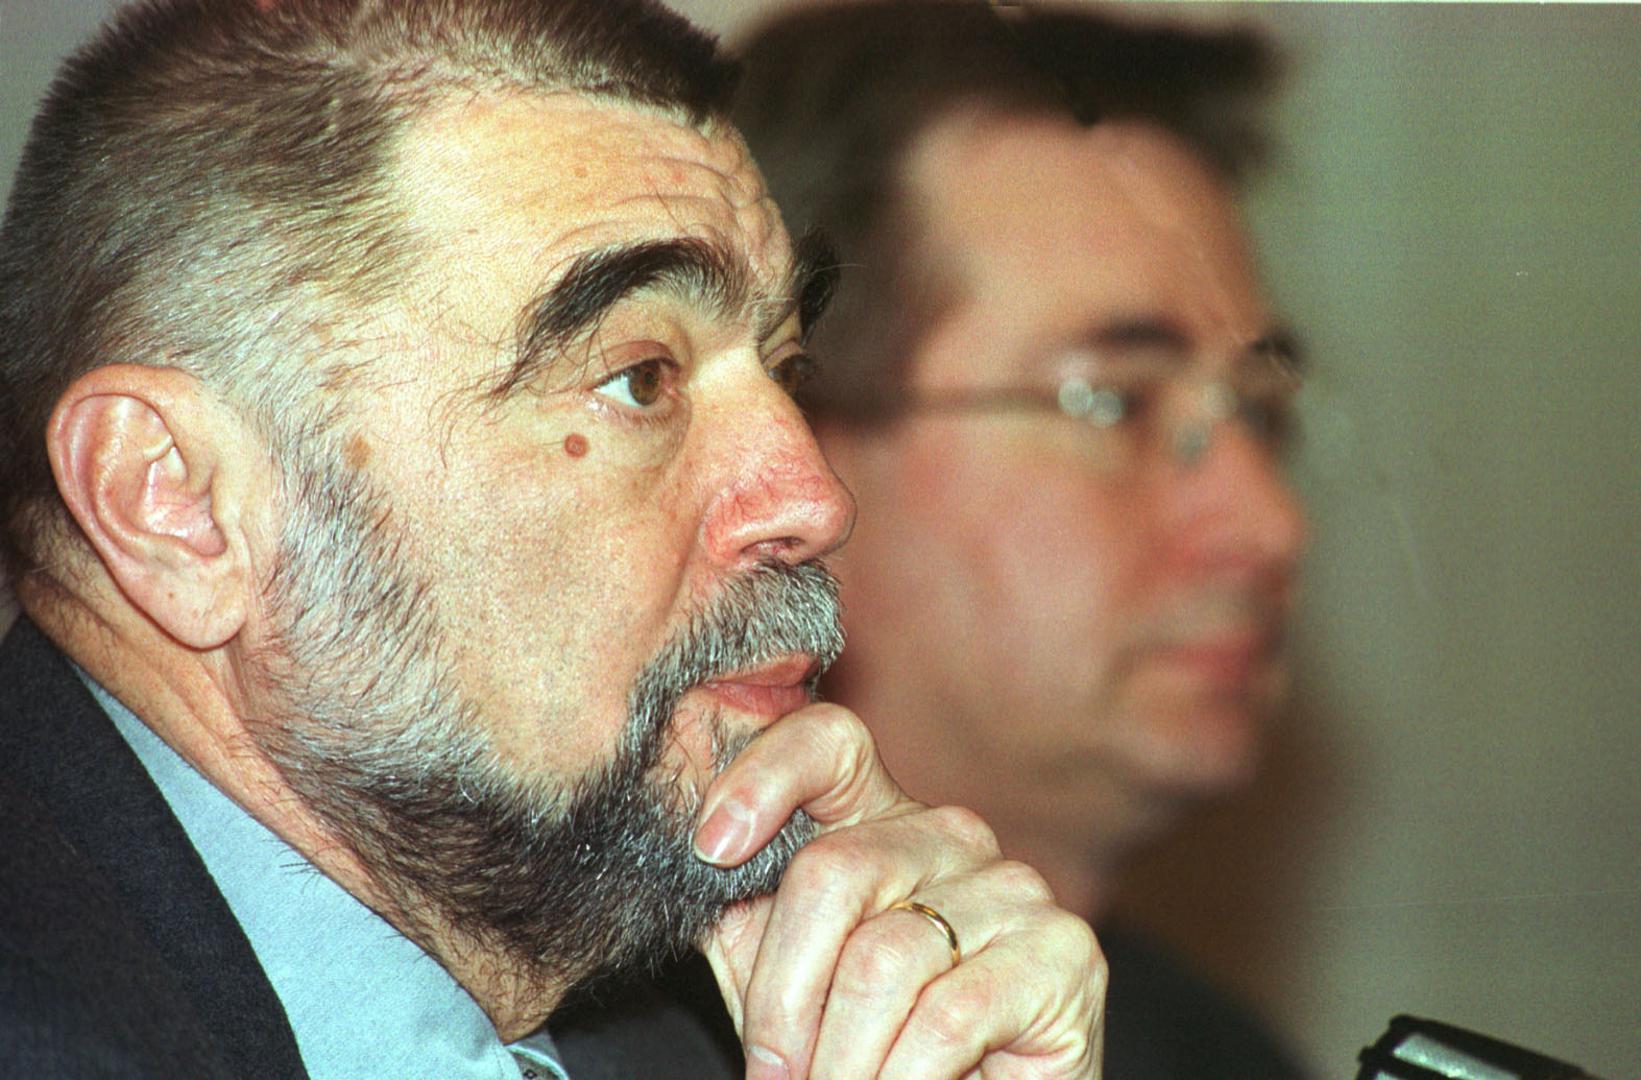 Izbori 2000. godine bili su prvi u kojima smo imali drugi krug u koji su ušli Stjepan Mesić i Dražen Budiša. Mesić je u drugom krugu dobio 56 posto glasova (1,433,372 glasova), a Budiša 44 posto (1,125,969 glasova). U prvom krugu treći je bio Mate Granić. 